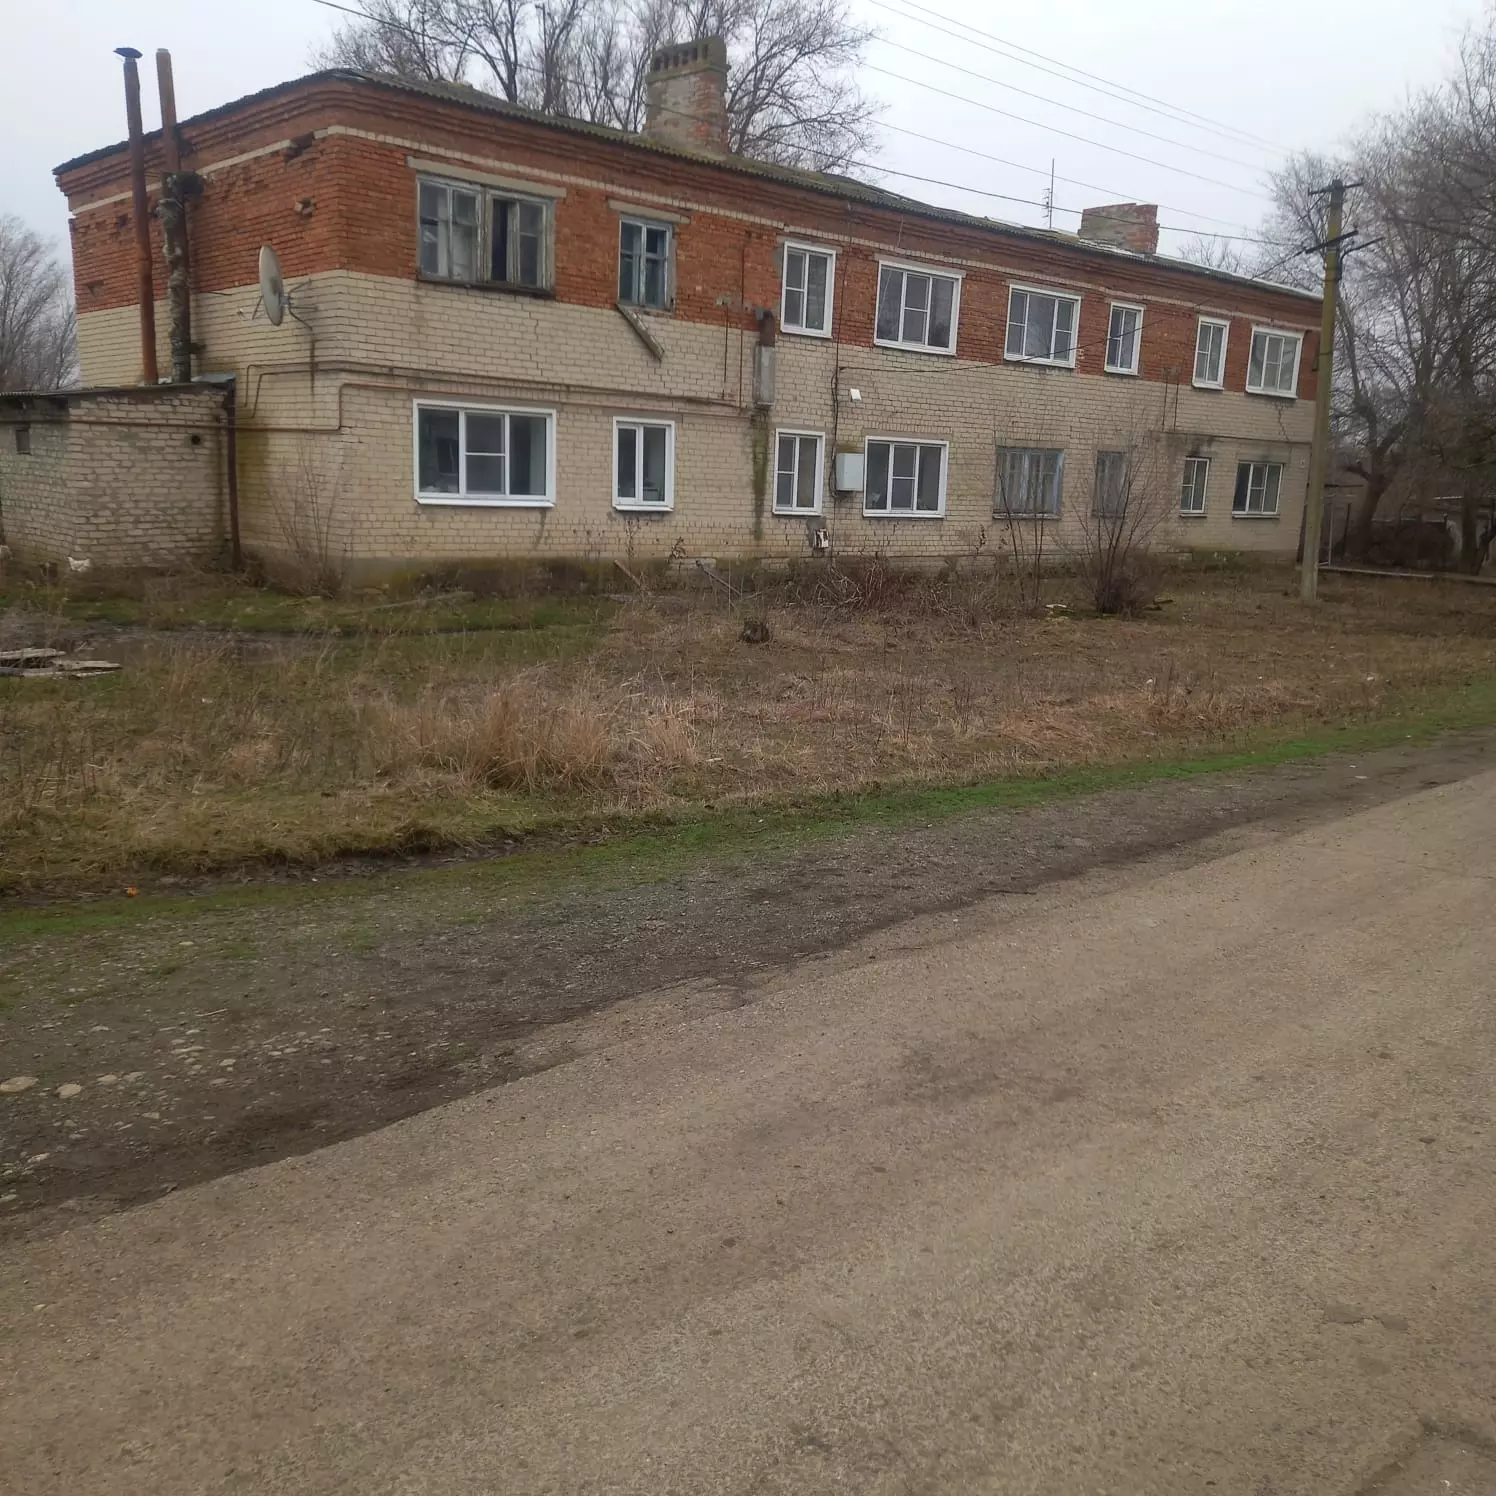 В администрации Кочубеевского округа столь странный выбор объекта для ремонта объяснили тем, что у того была большая степень износа.